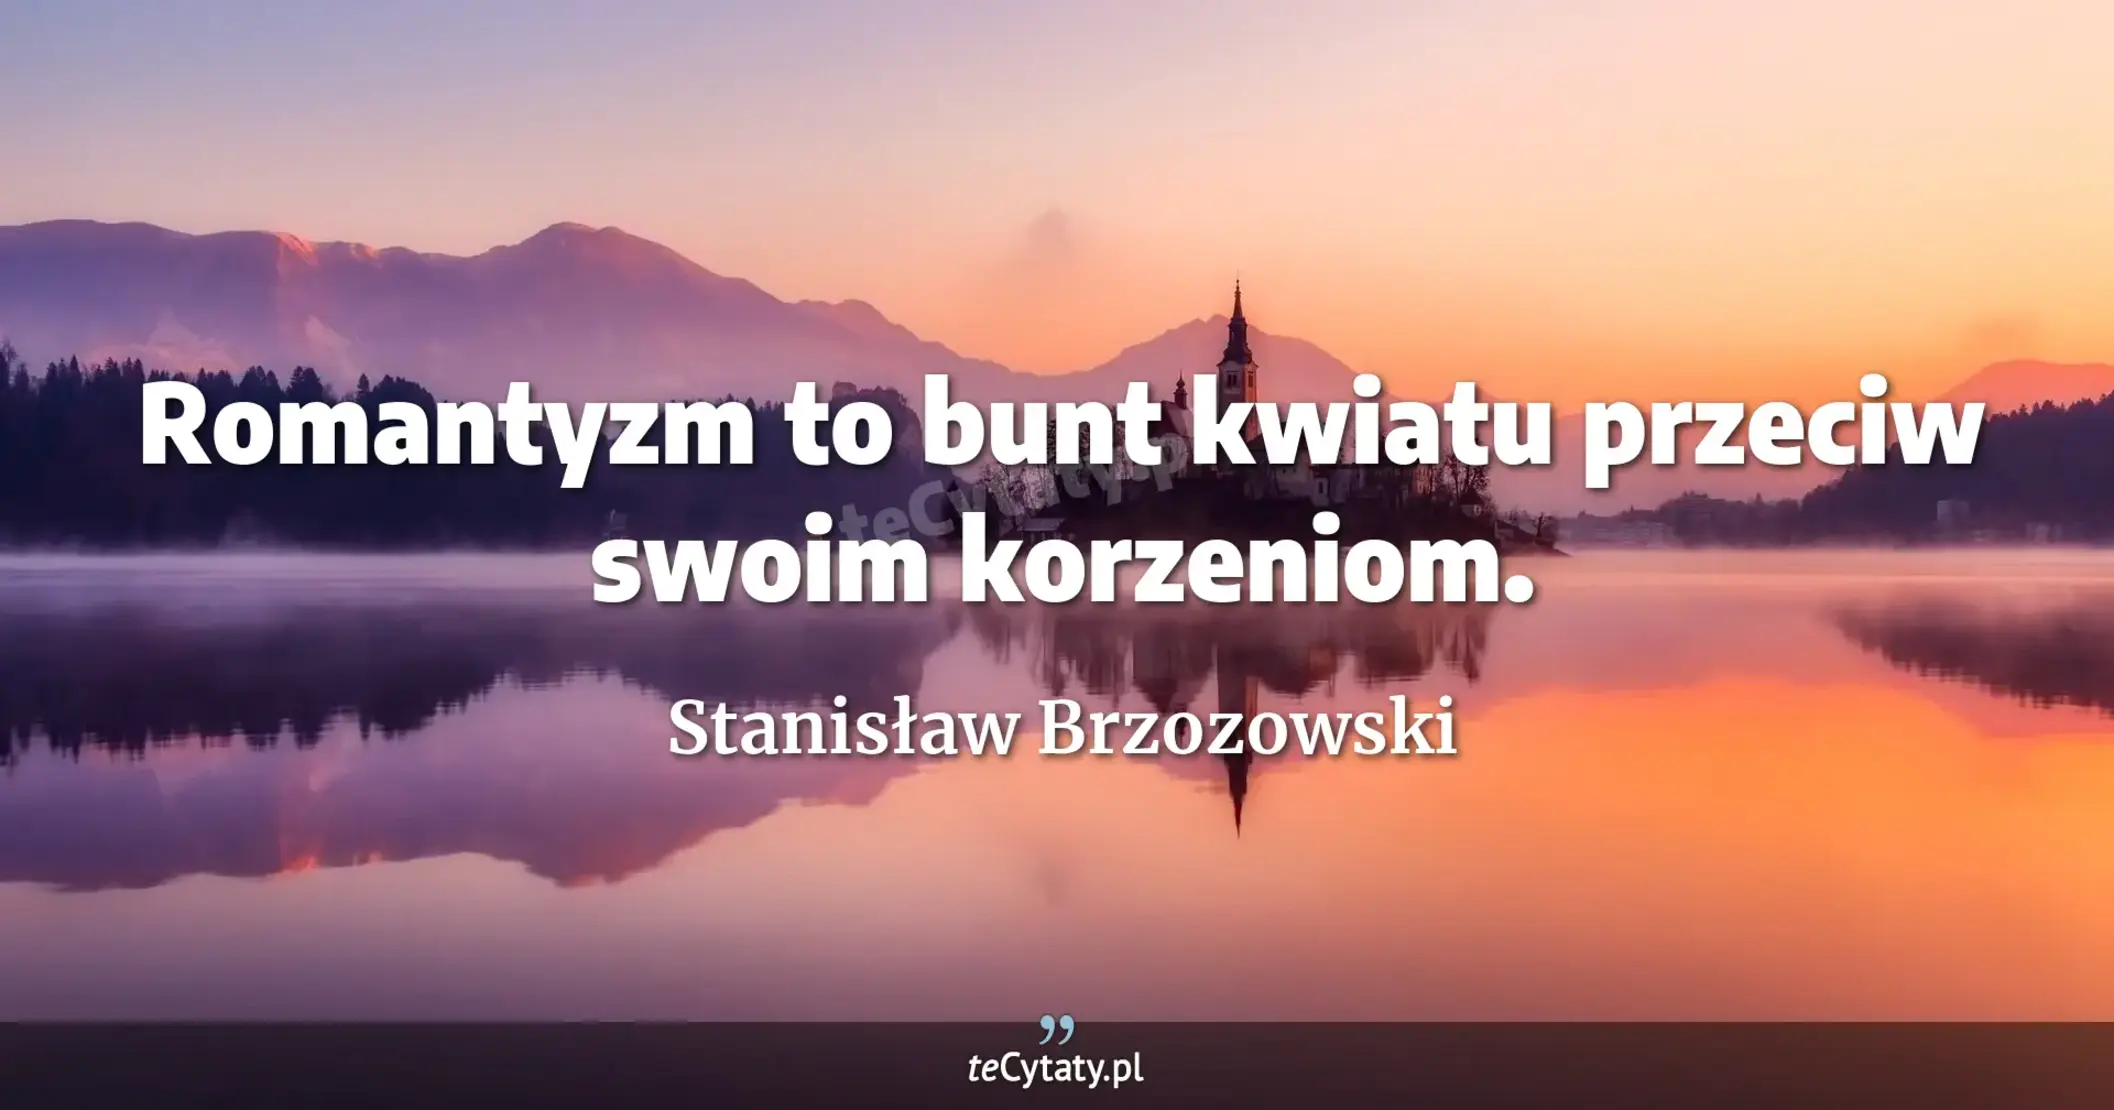 Romantyzm to bunt kwiatu przeciw swoim korzeniom. - Stanisław Brzozowski